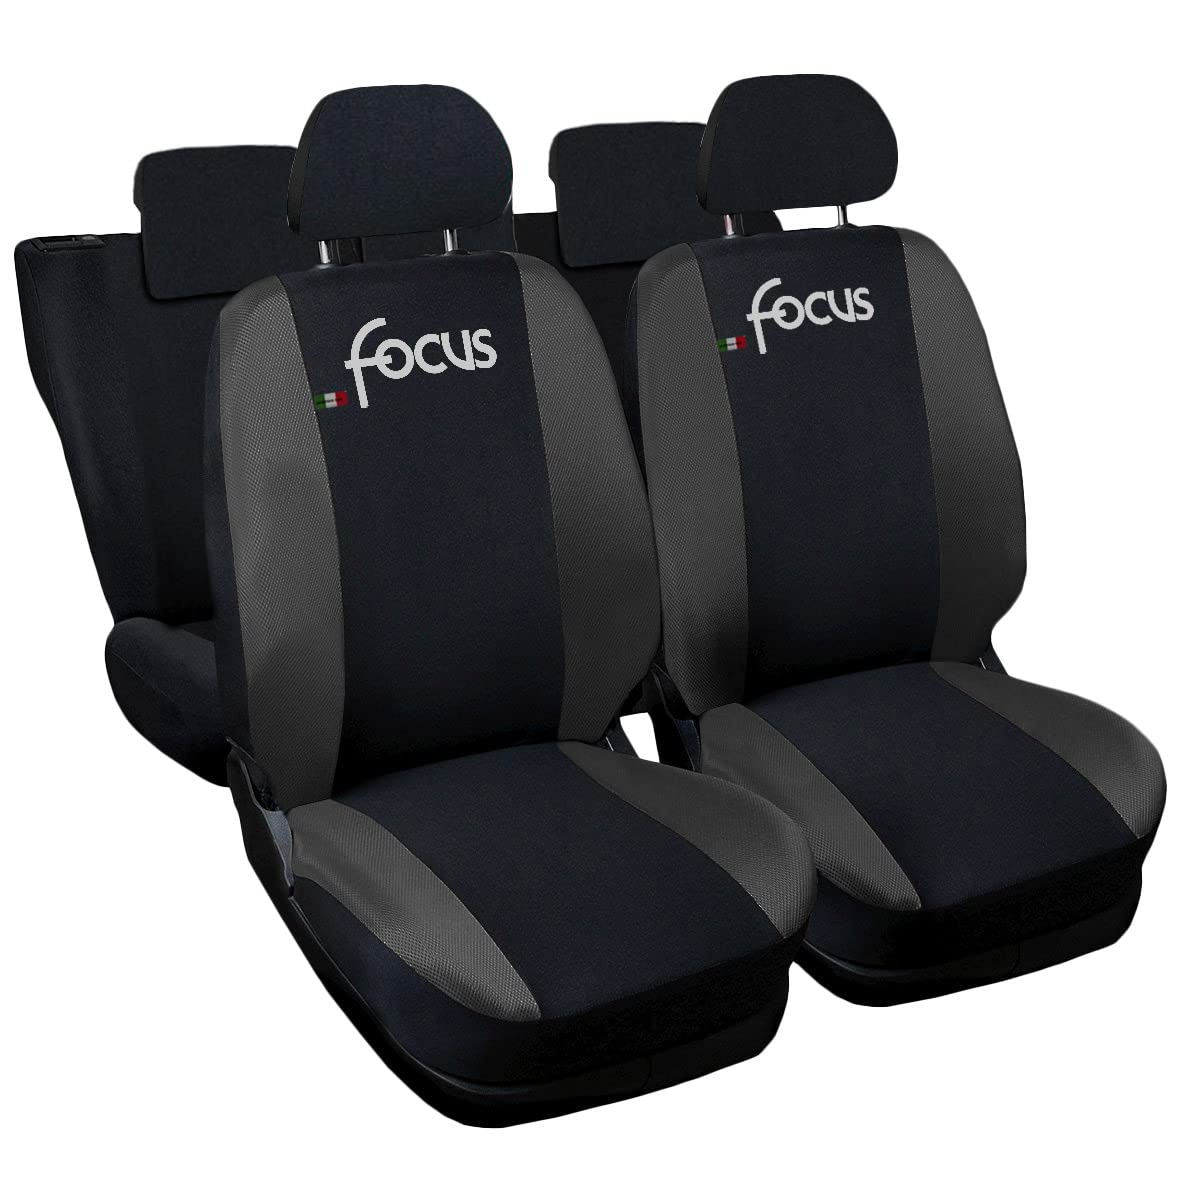 Lupex Shop Autositzbezüge kompatibel mit Focus, Made in Italy, Polyestergewebe, kompletter Satz Vorder- und Rücksitze (Schwarz - Dunkelgrau) von Lupex Shop